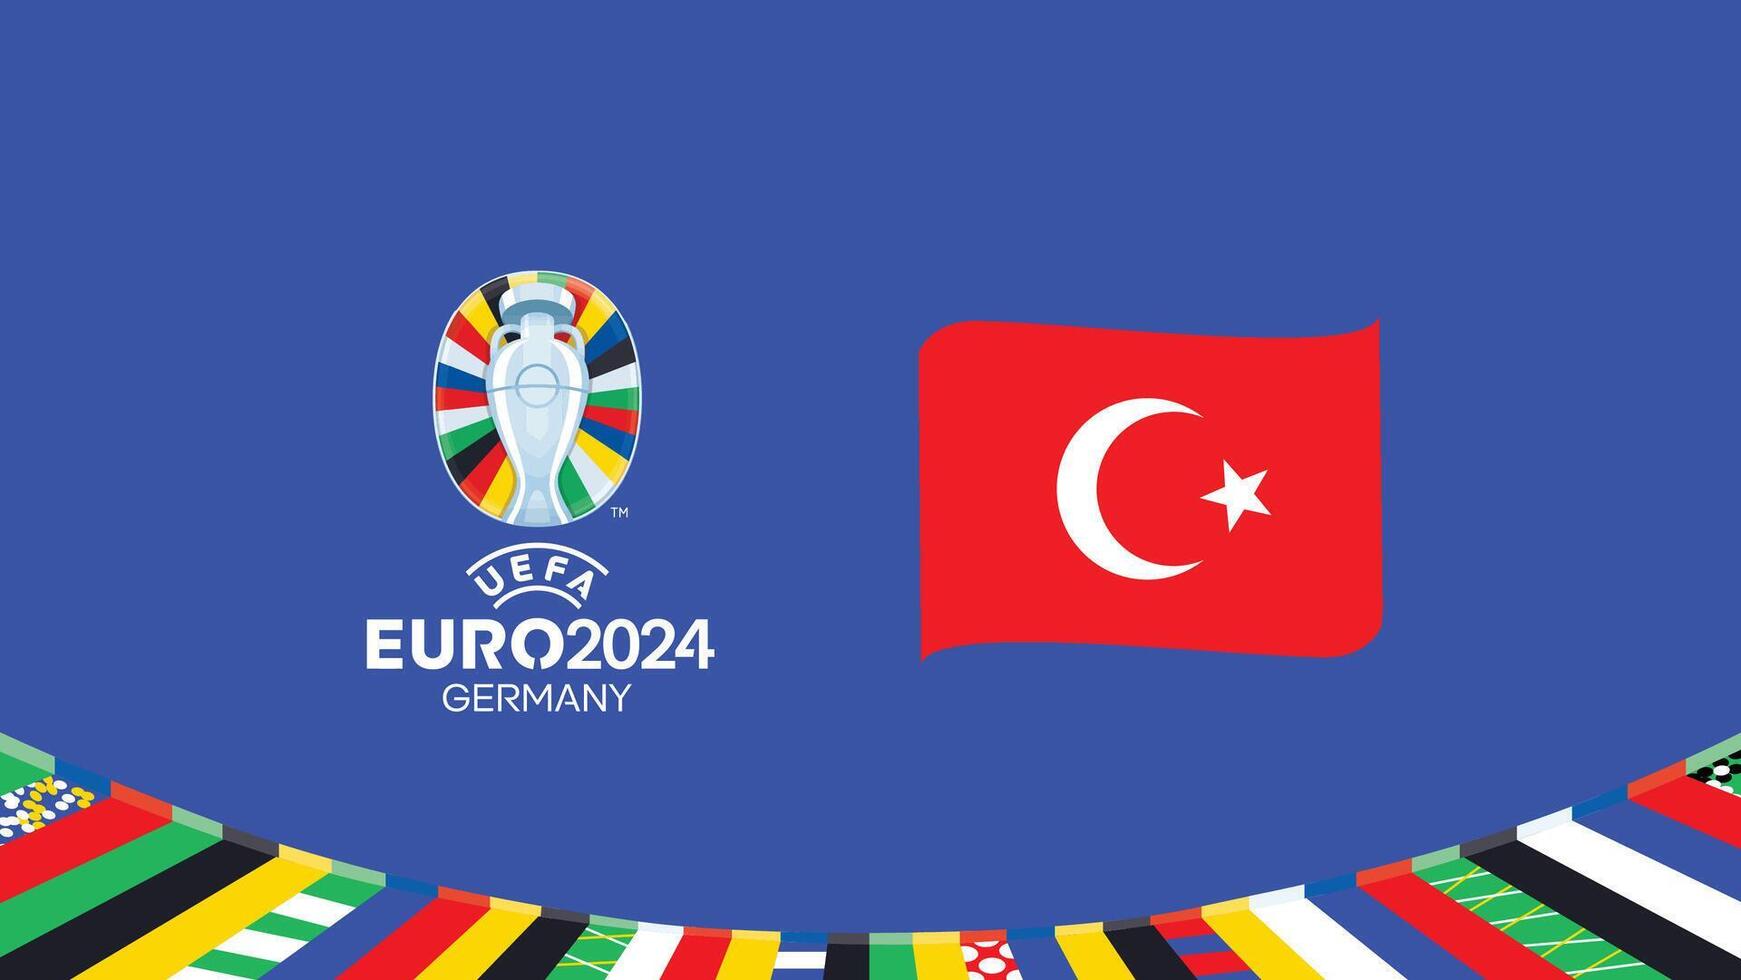 euro 2024 turquiye emblema fita equipes Projeto com oficial símbolo logotipo abstrato países europeu futebol ilustração vetor